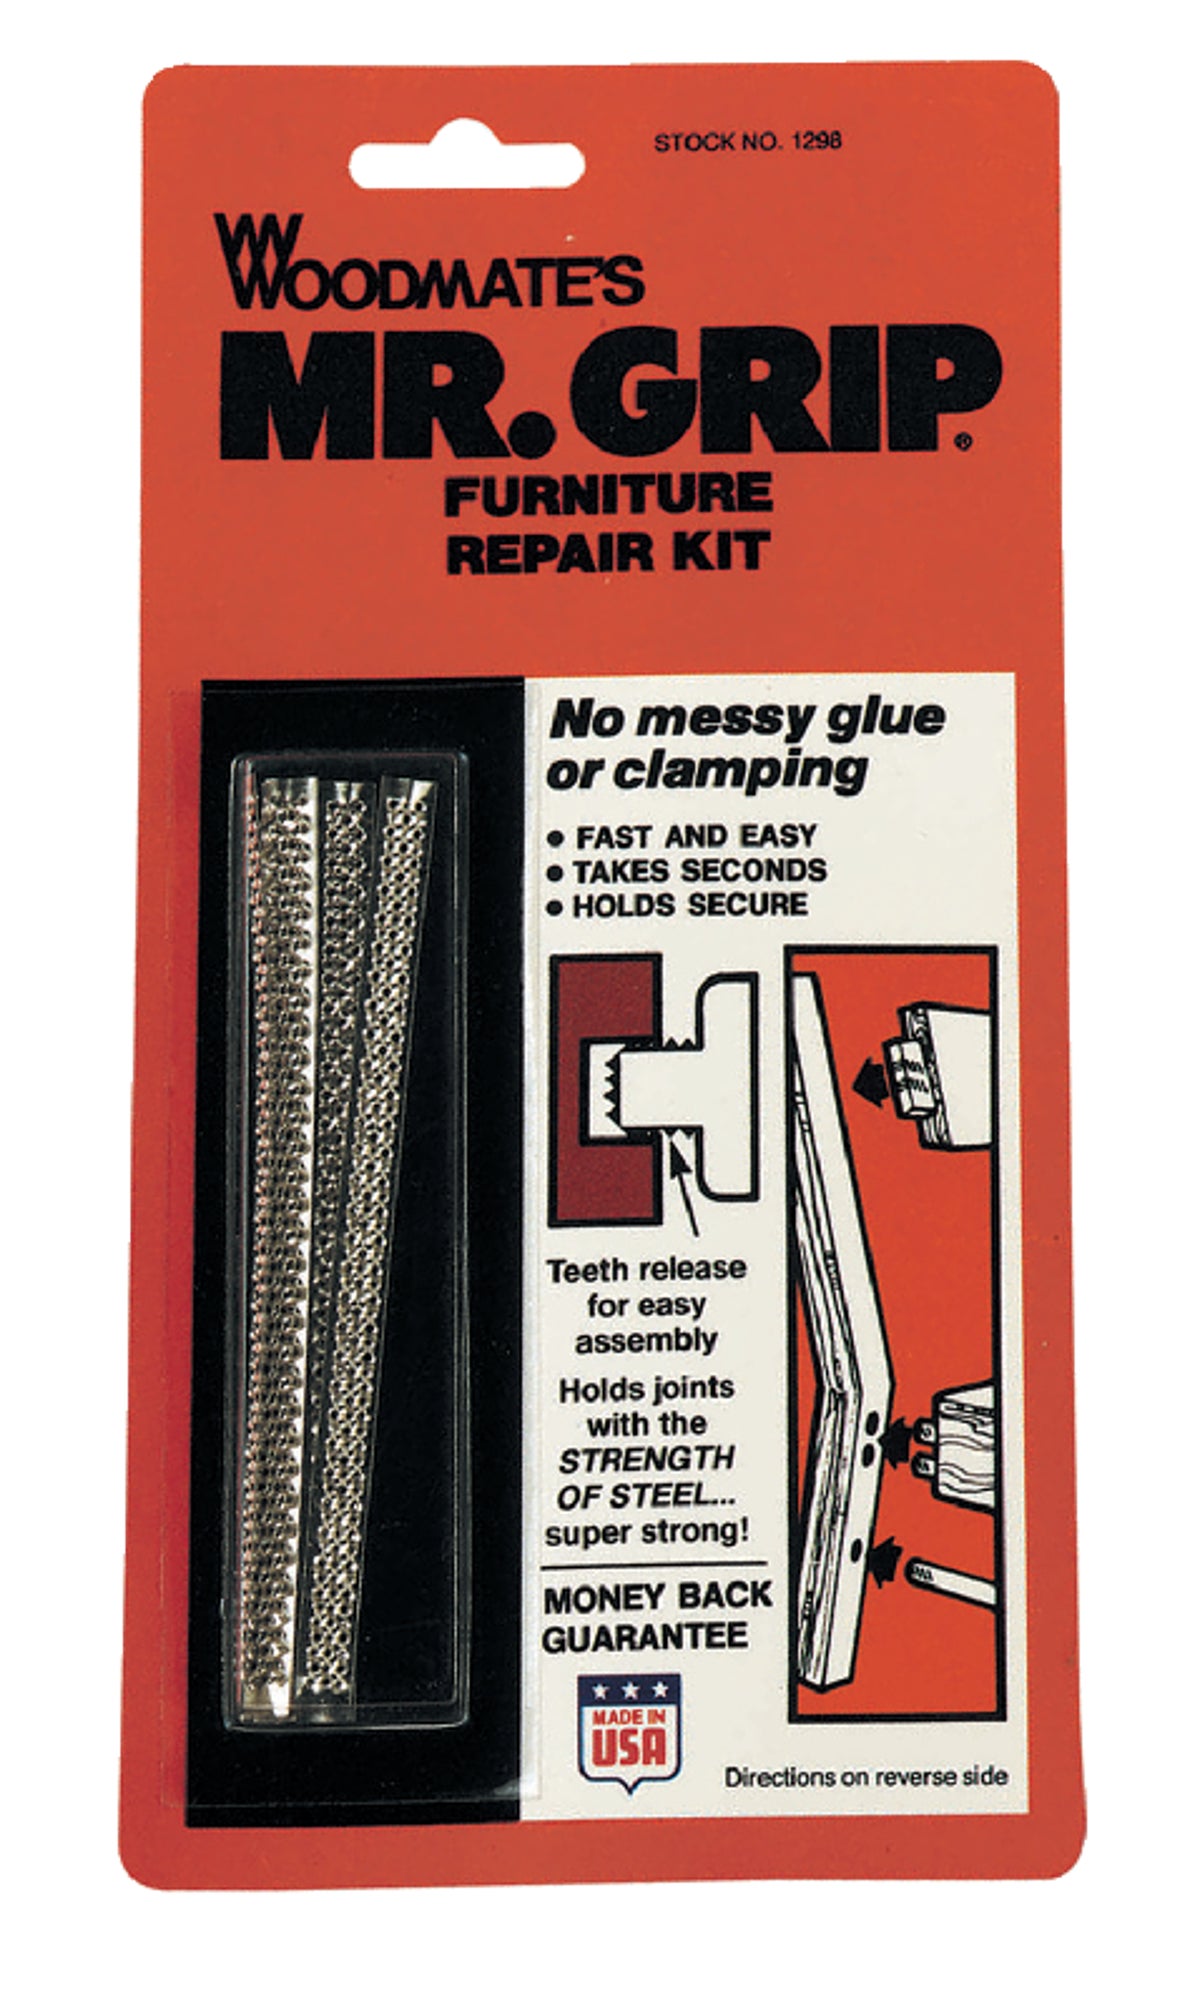 Mr Grip Furniture Repair Kit, Bed Frame Repair Kit